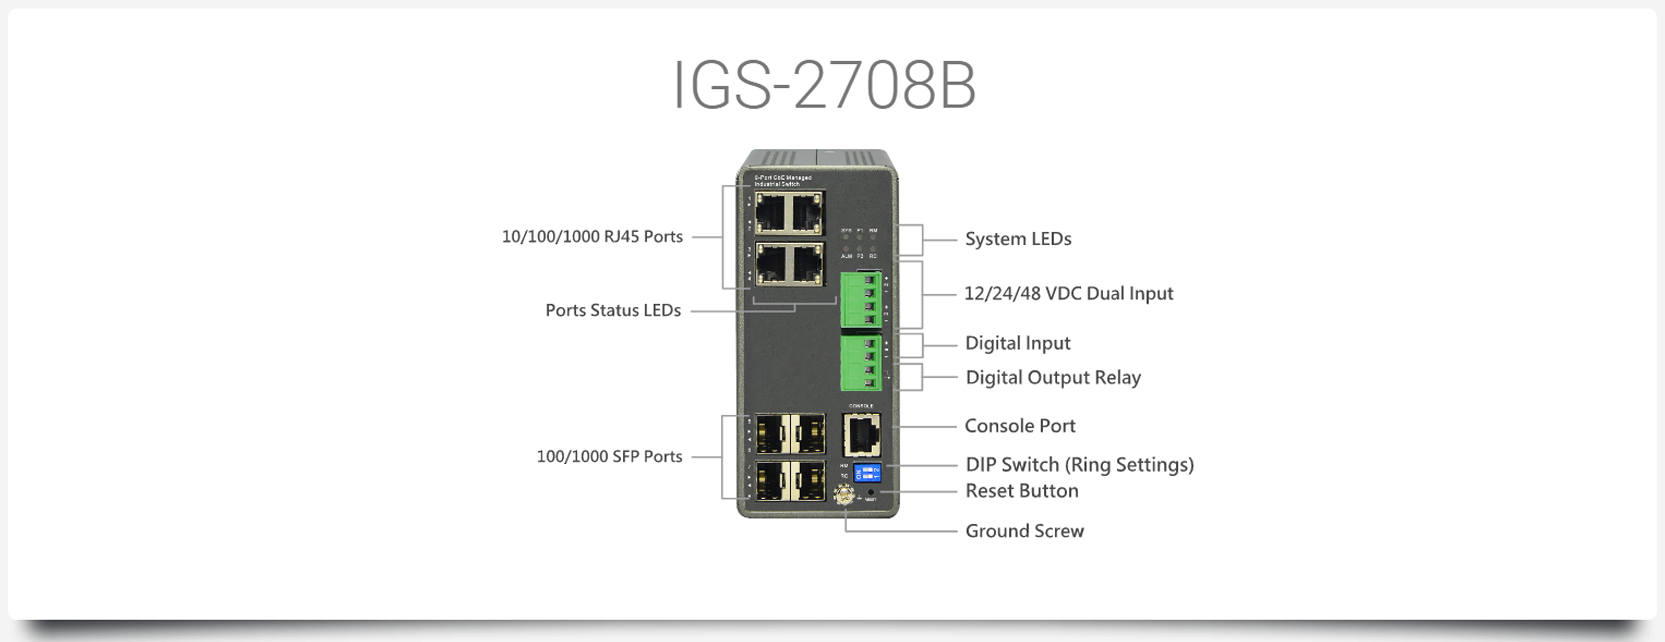 IGS-2708B